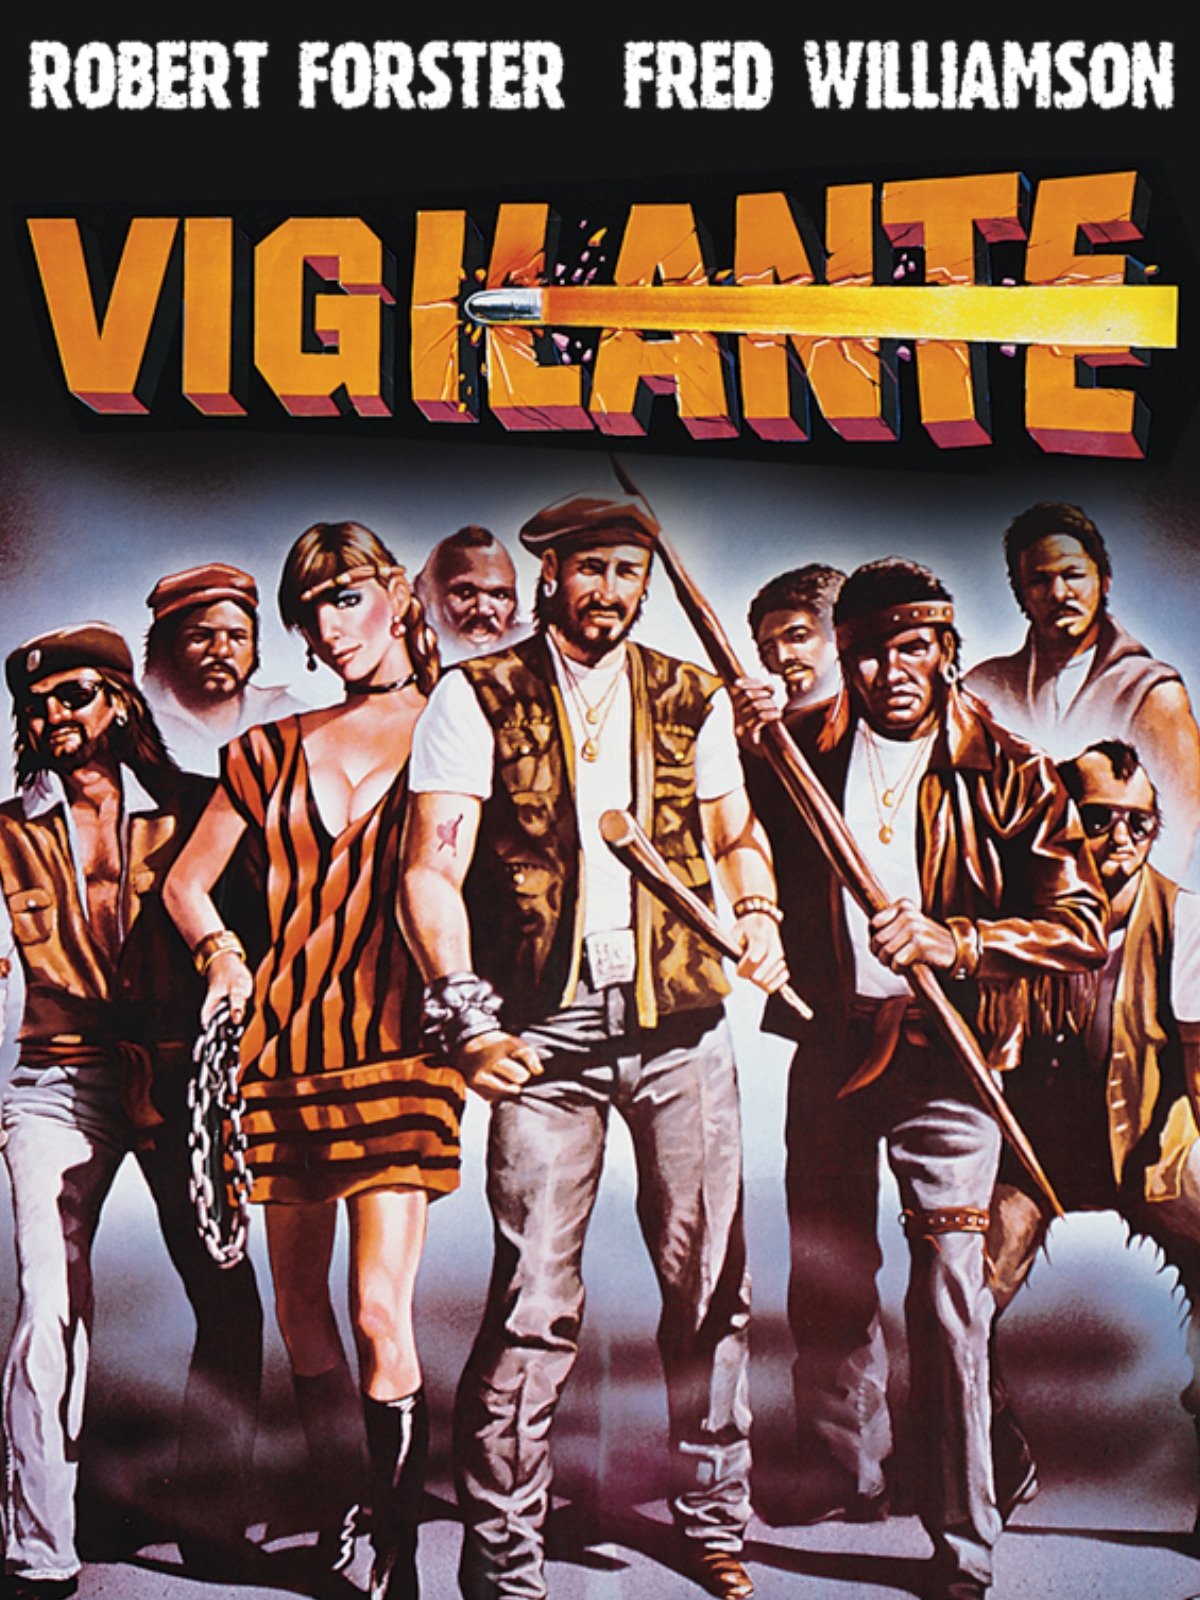 Vigilante (1982)